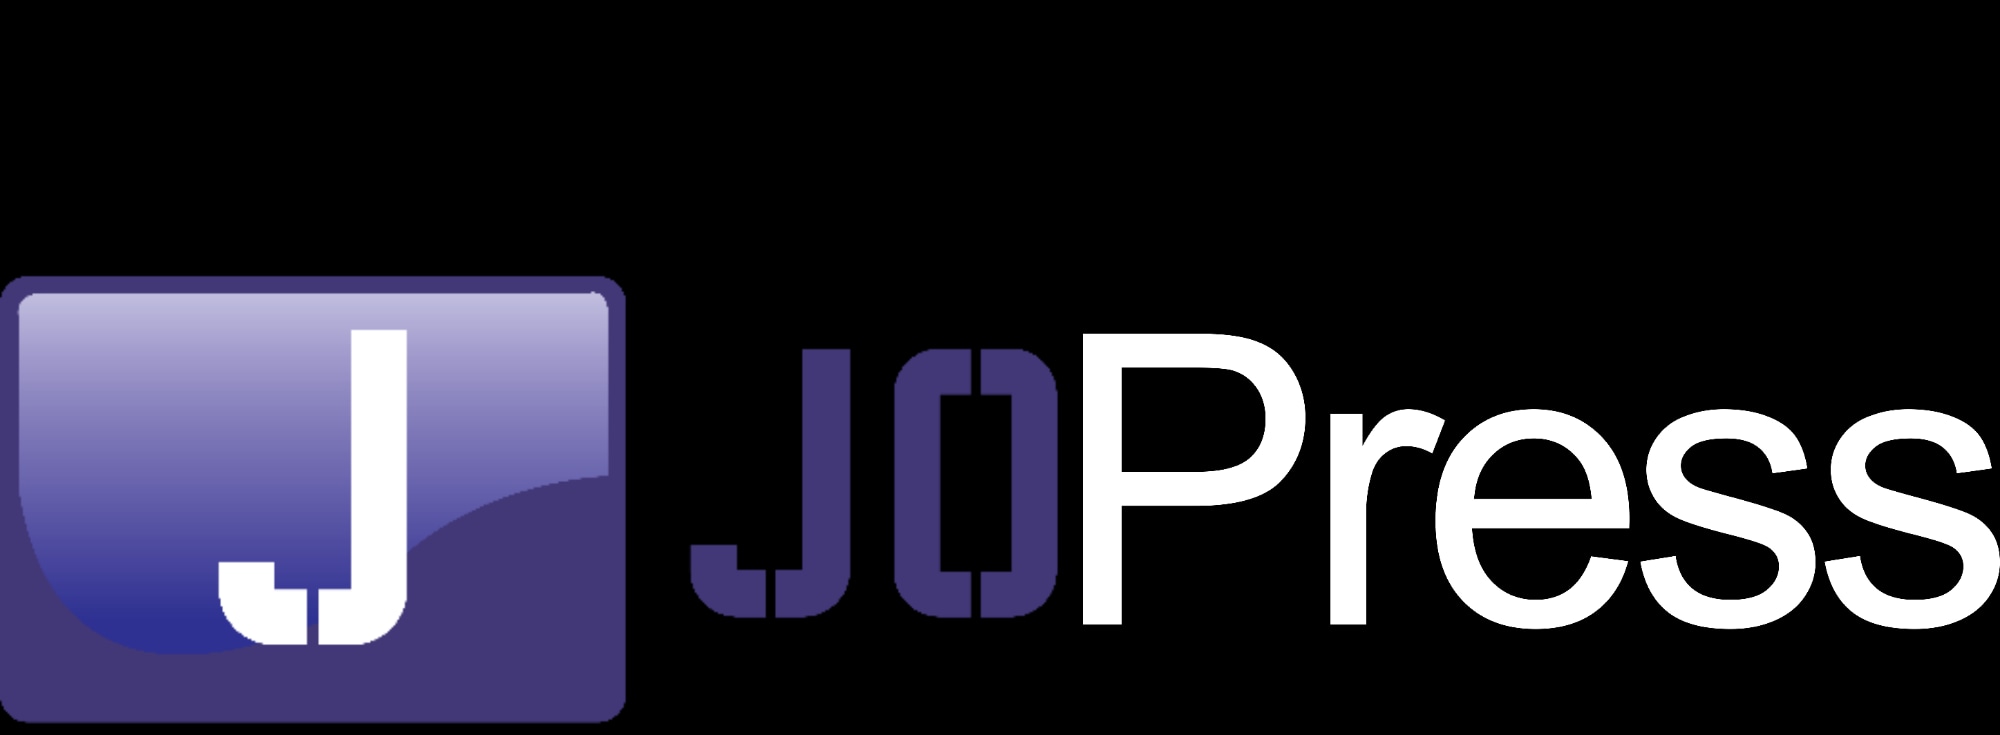 Jopress community Logo